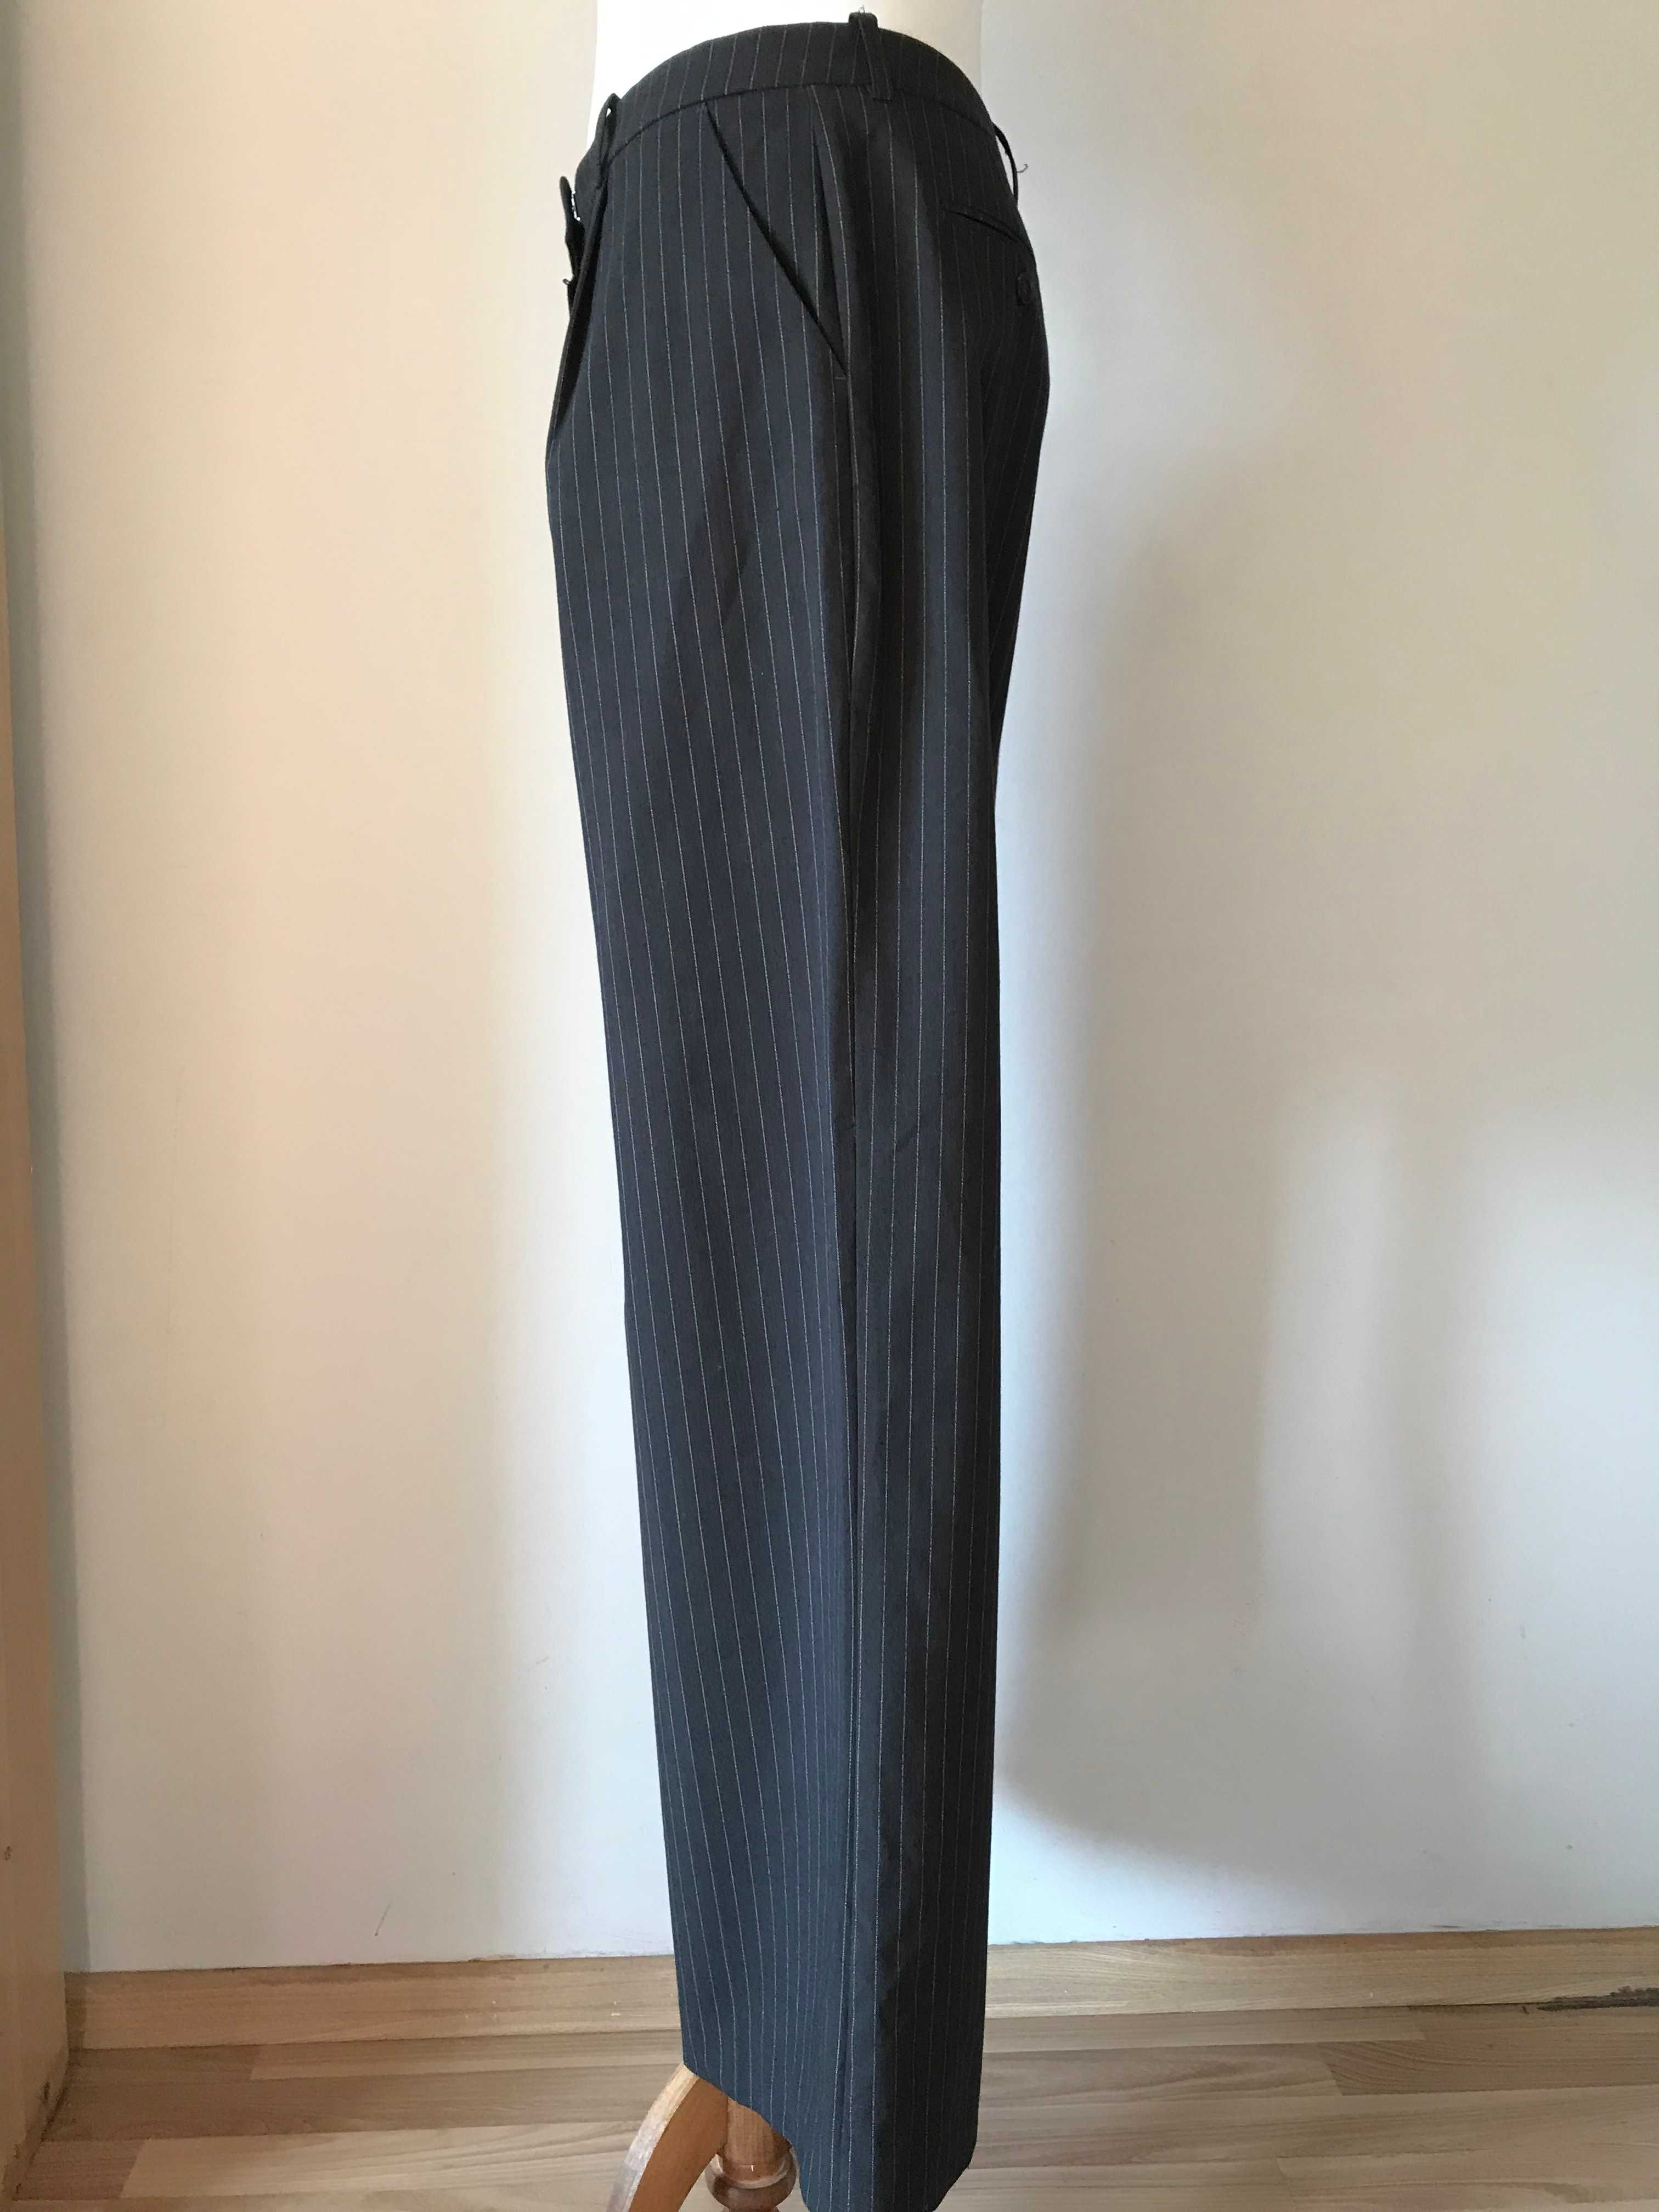 Szare eleganckie spodnie z prążkiem wizytowe r. 44 biznesowe vintage